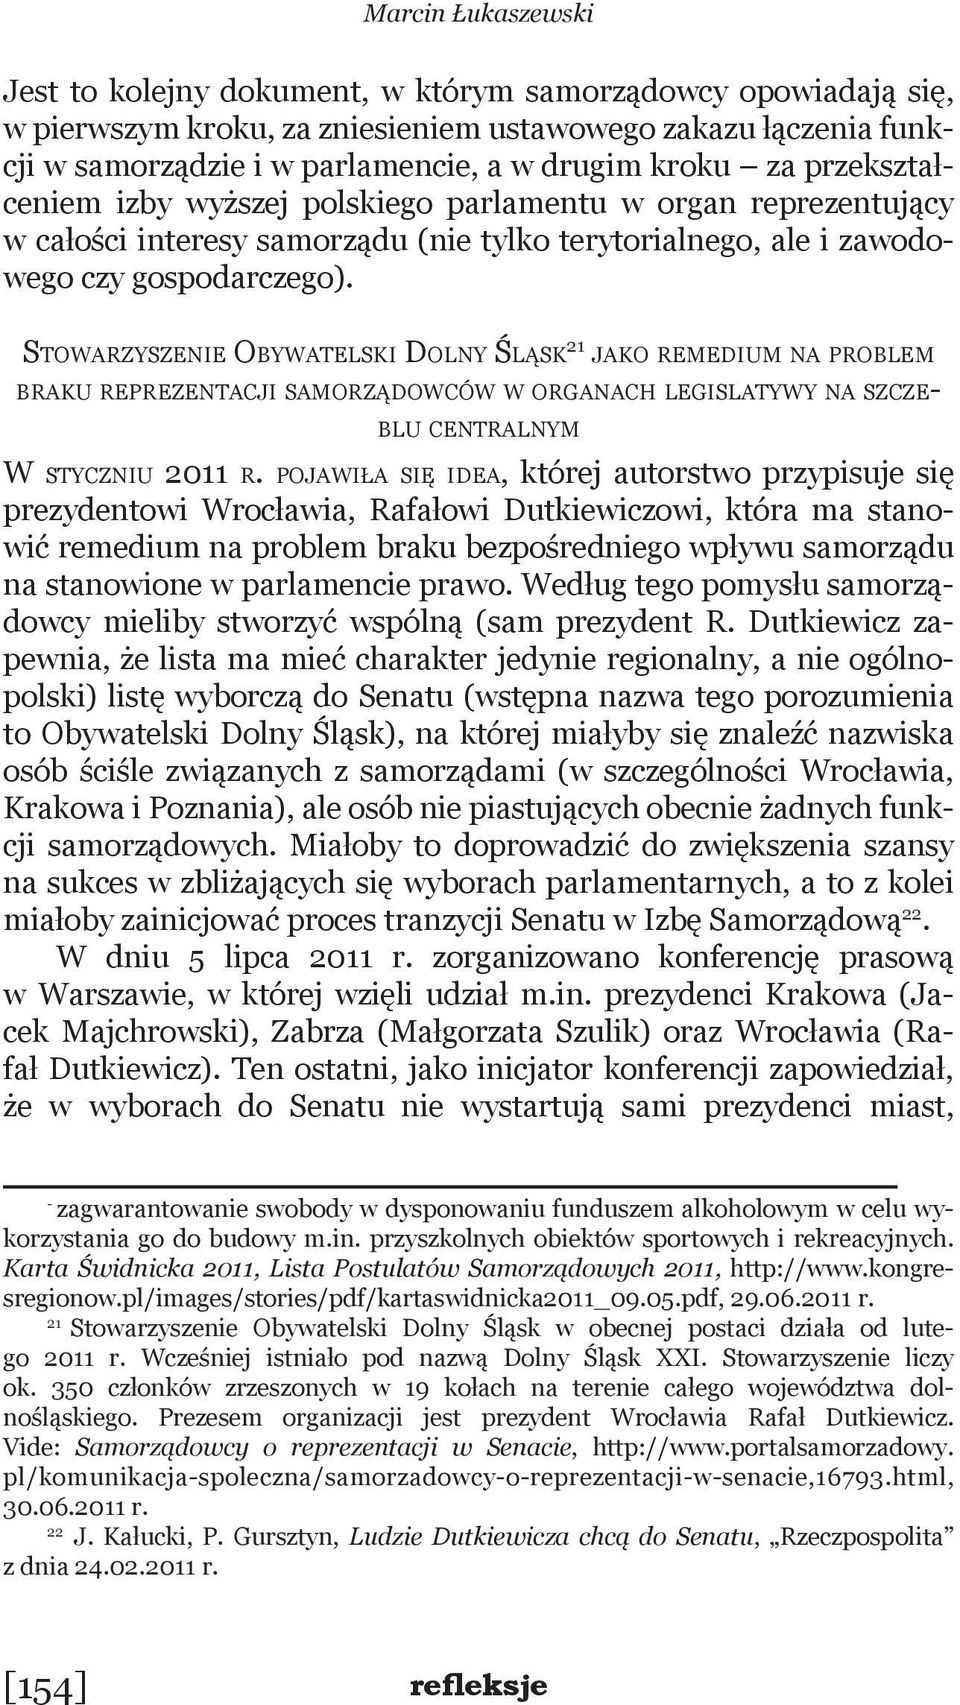 Stowarzyszenie Obywatelski Dolny Śląsk 21 jako remedium na problem braku reprezentacji samorządowców w organach legislatywy na szczeblu centralnym W styczniu 2011 r.